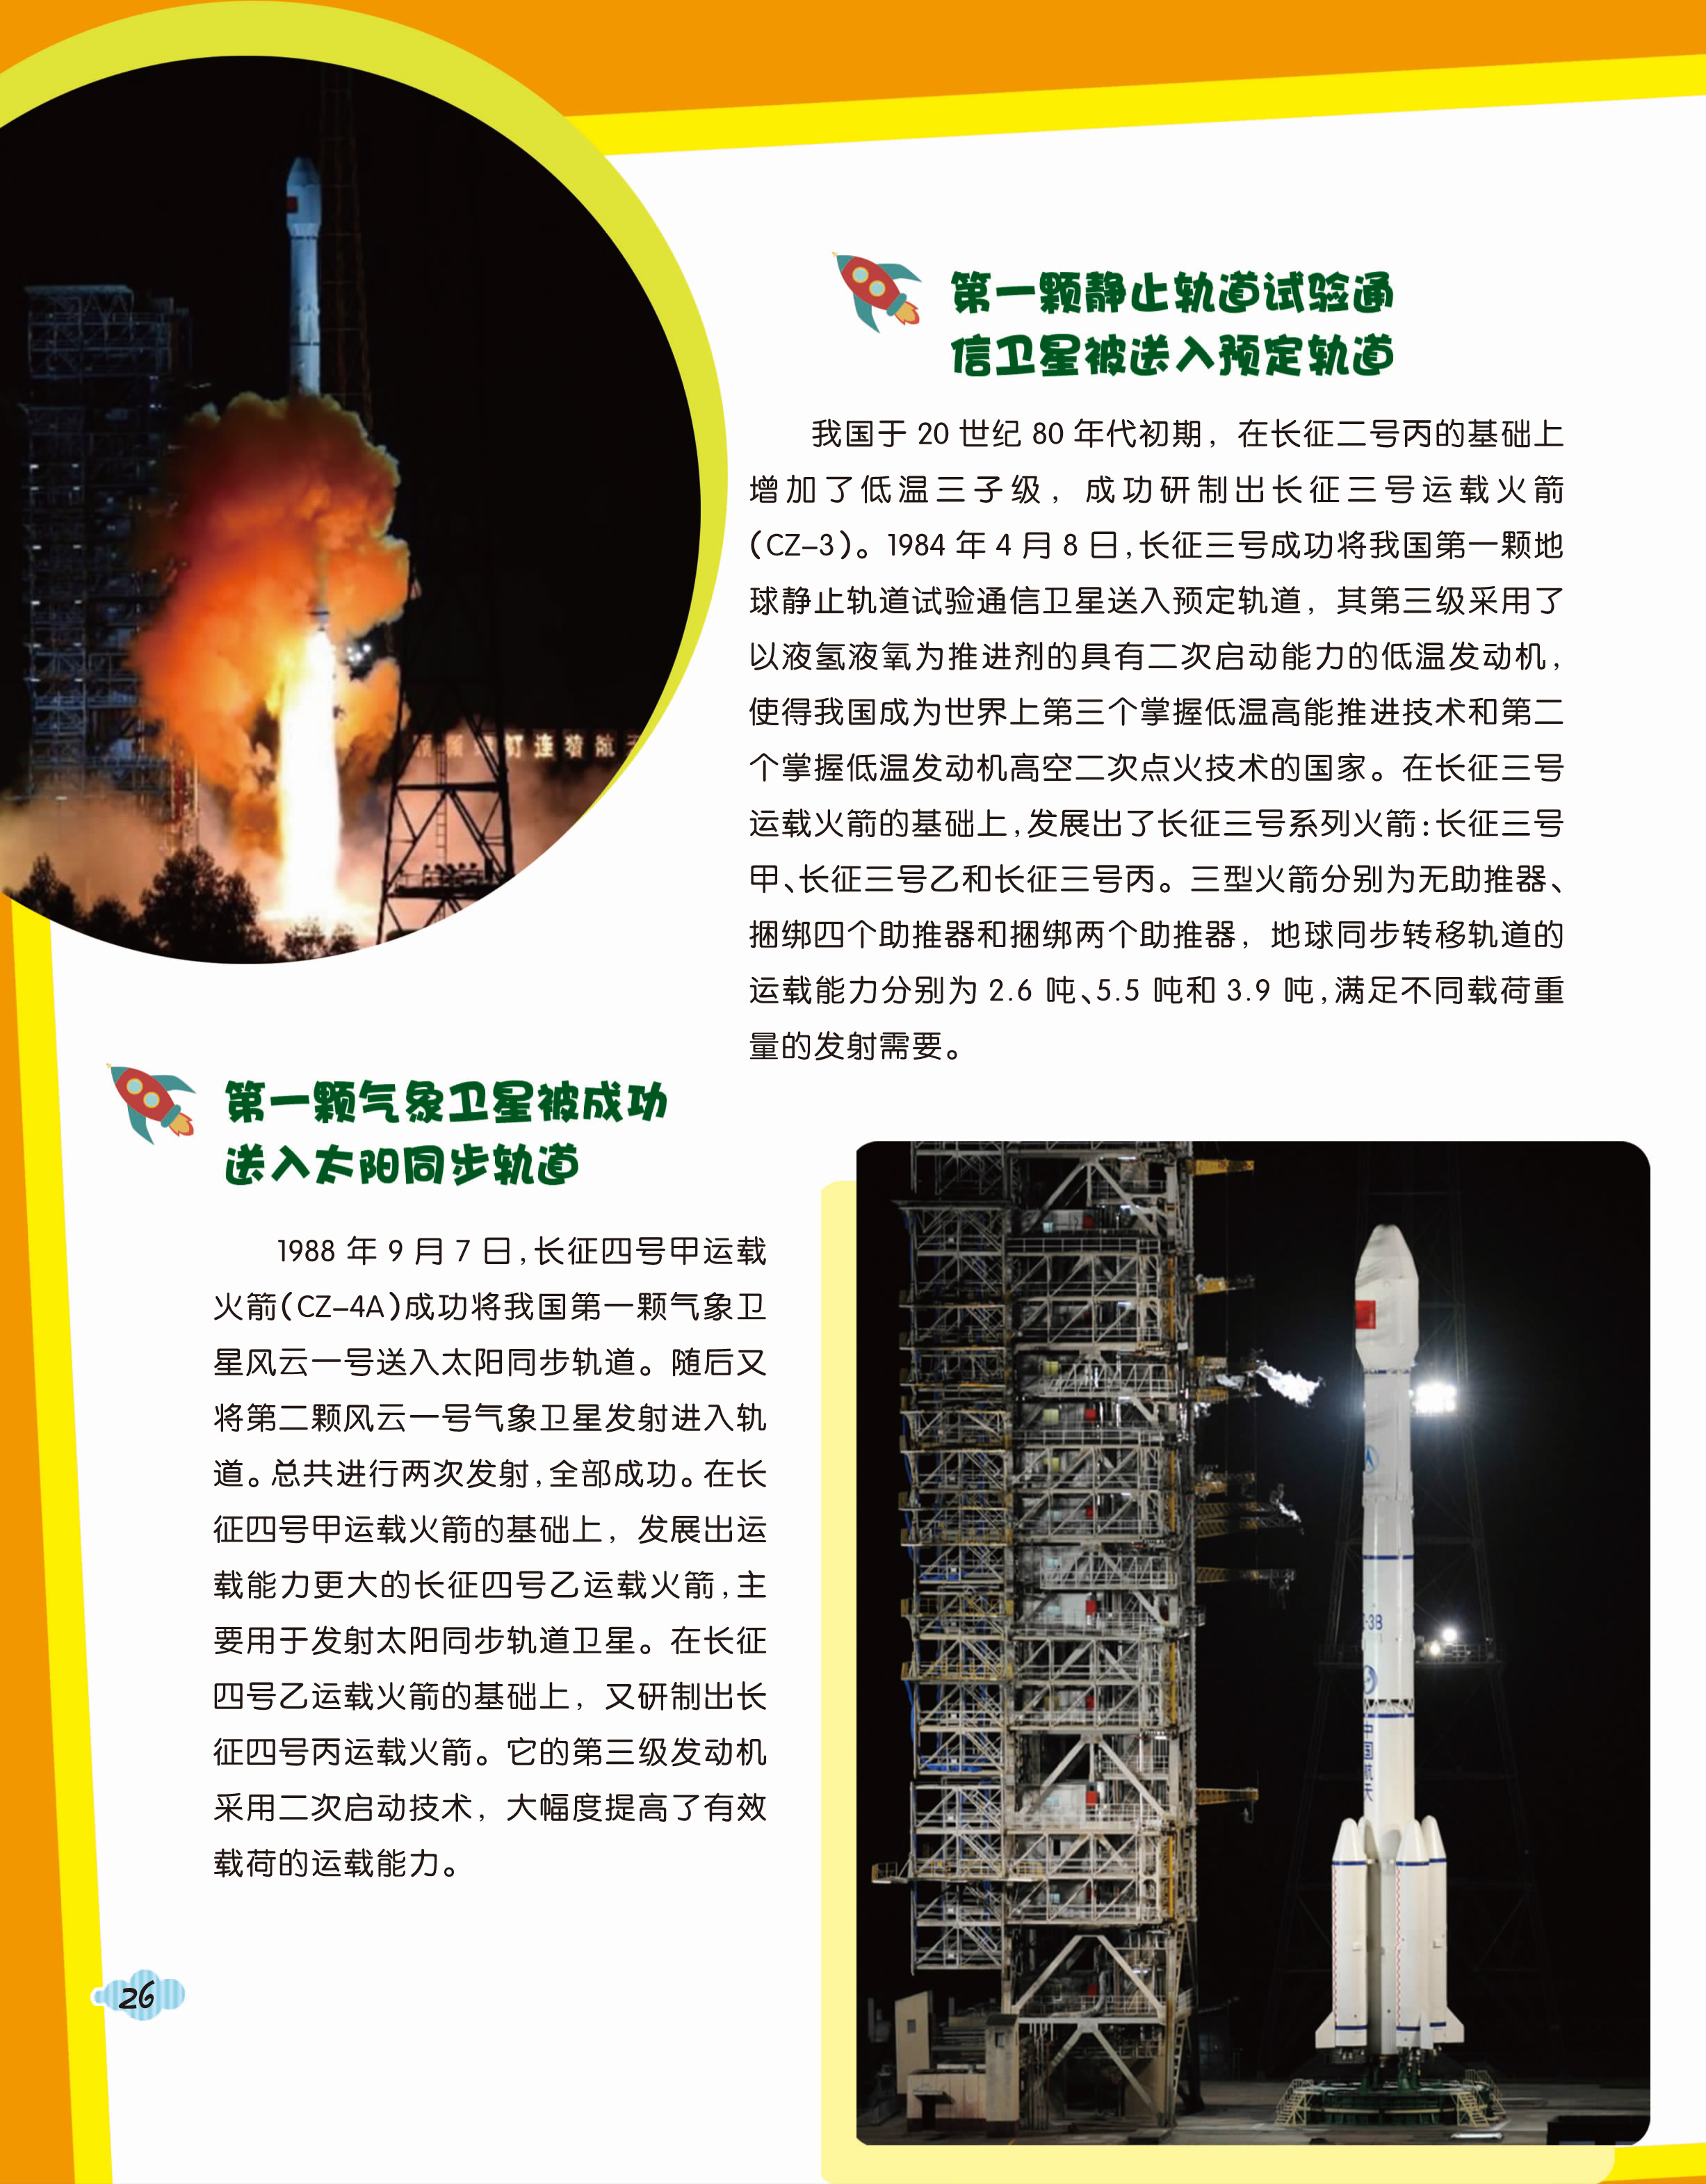 扶摇直上刺上青天——长征系列运载火箭发展史--中国